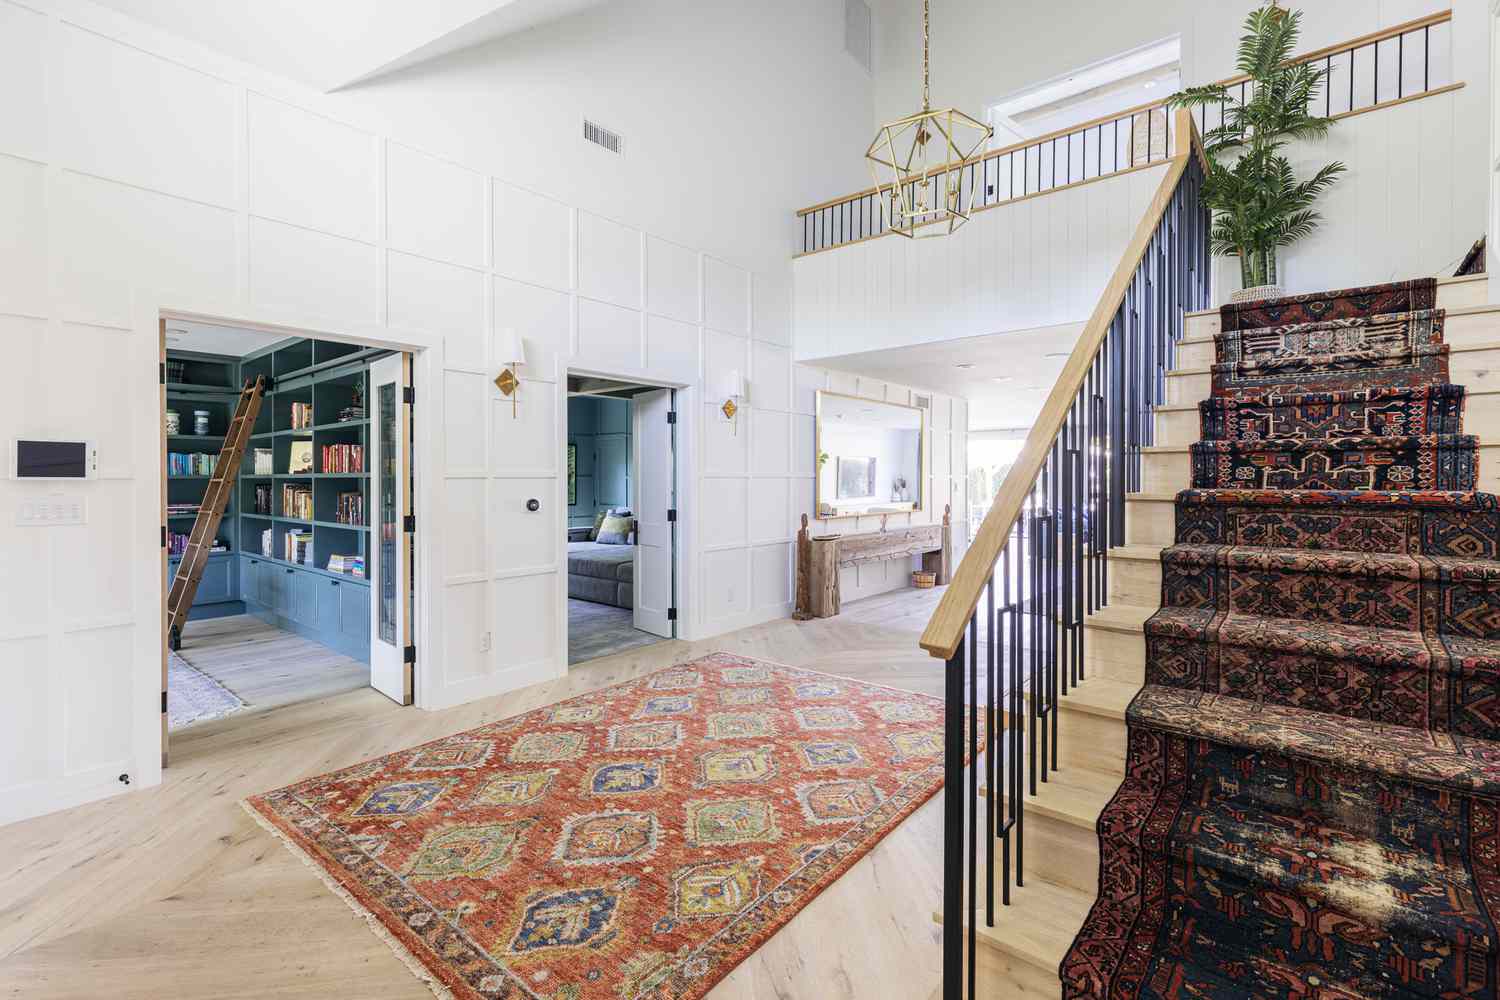 Entrada ampla decorada com tapete estampado no meio e na escada